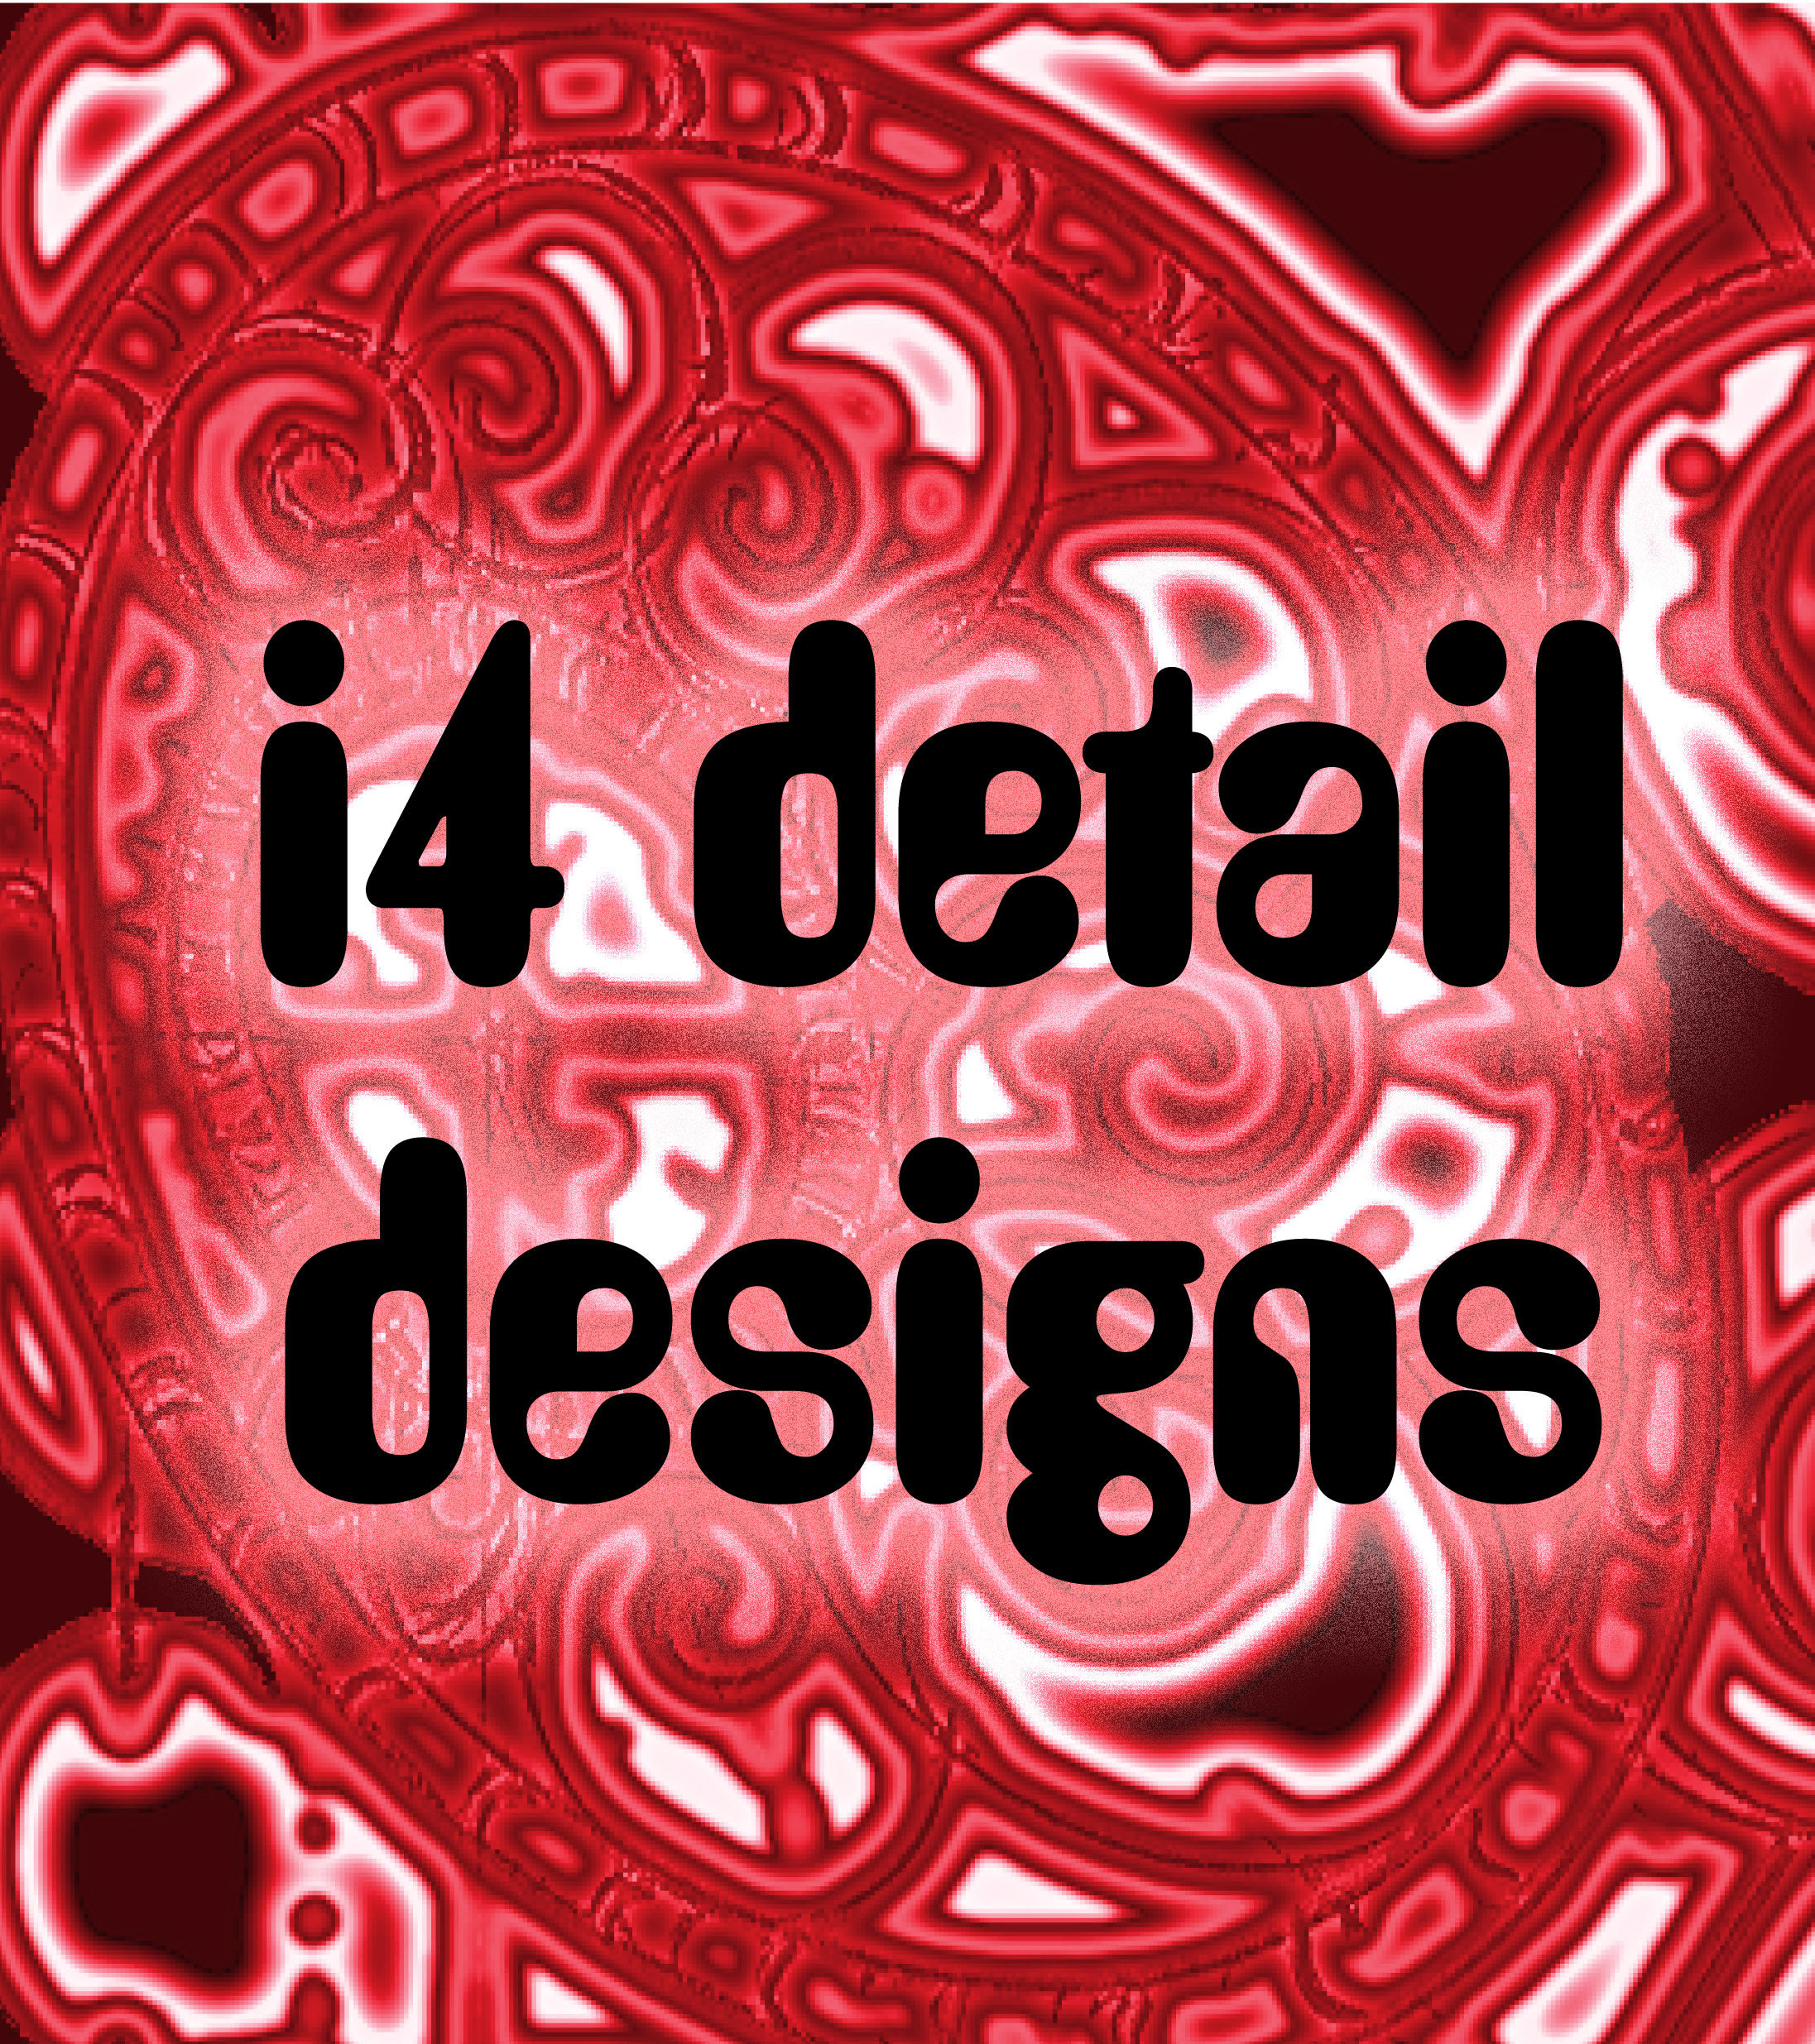 i4 detail designs